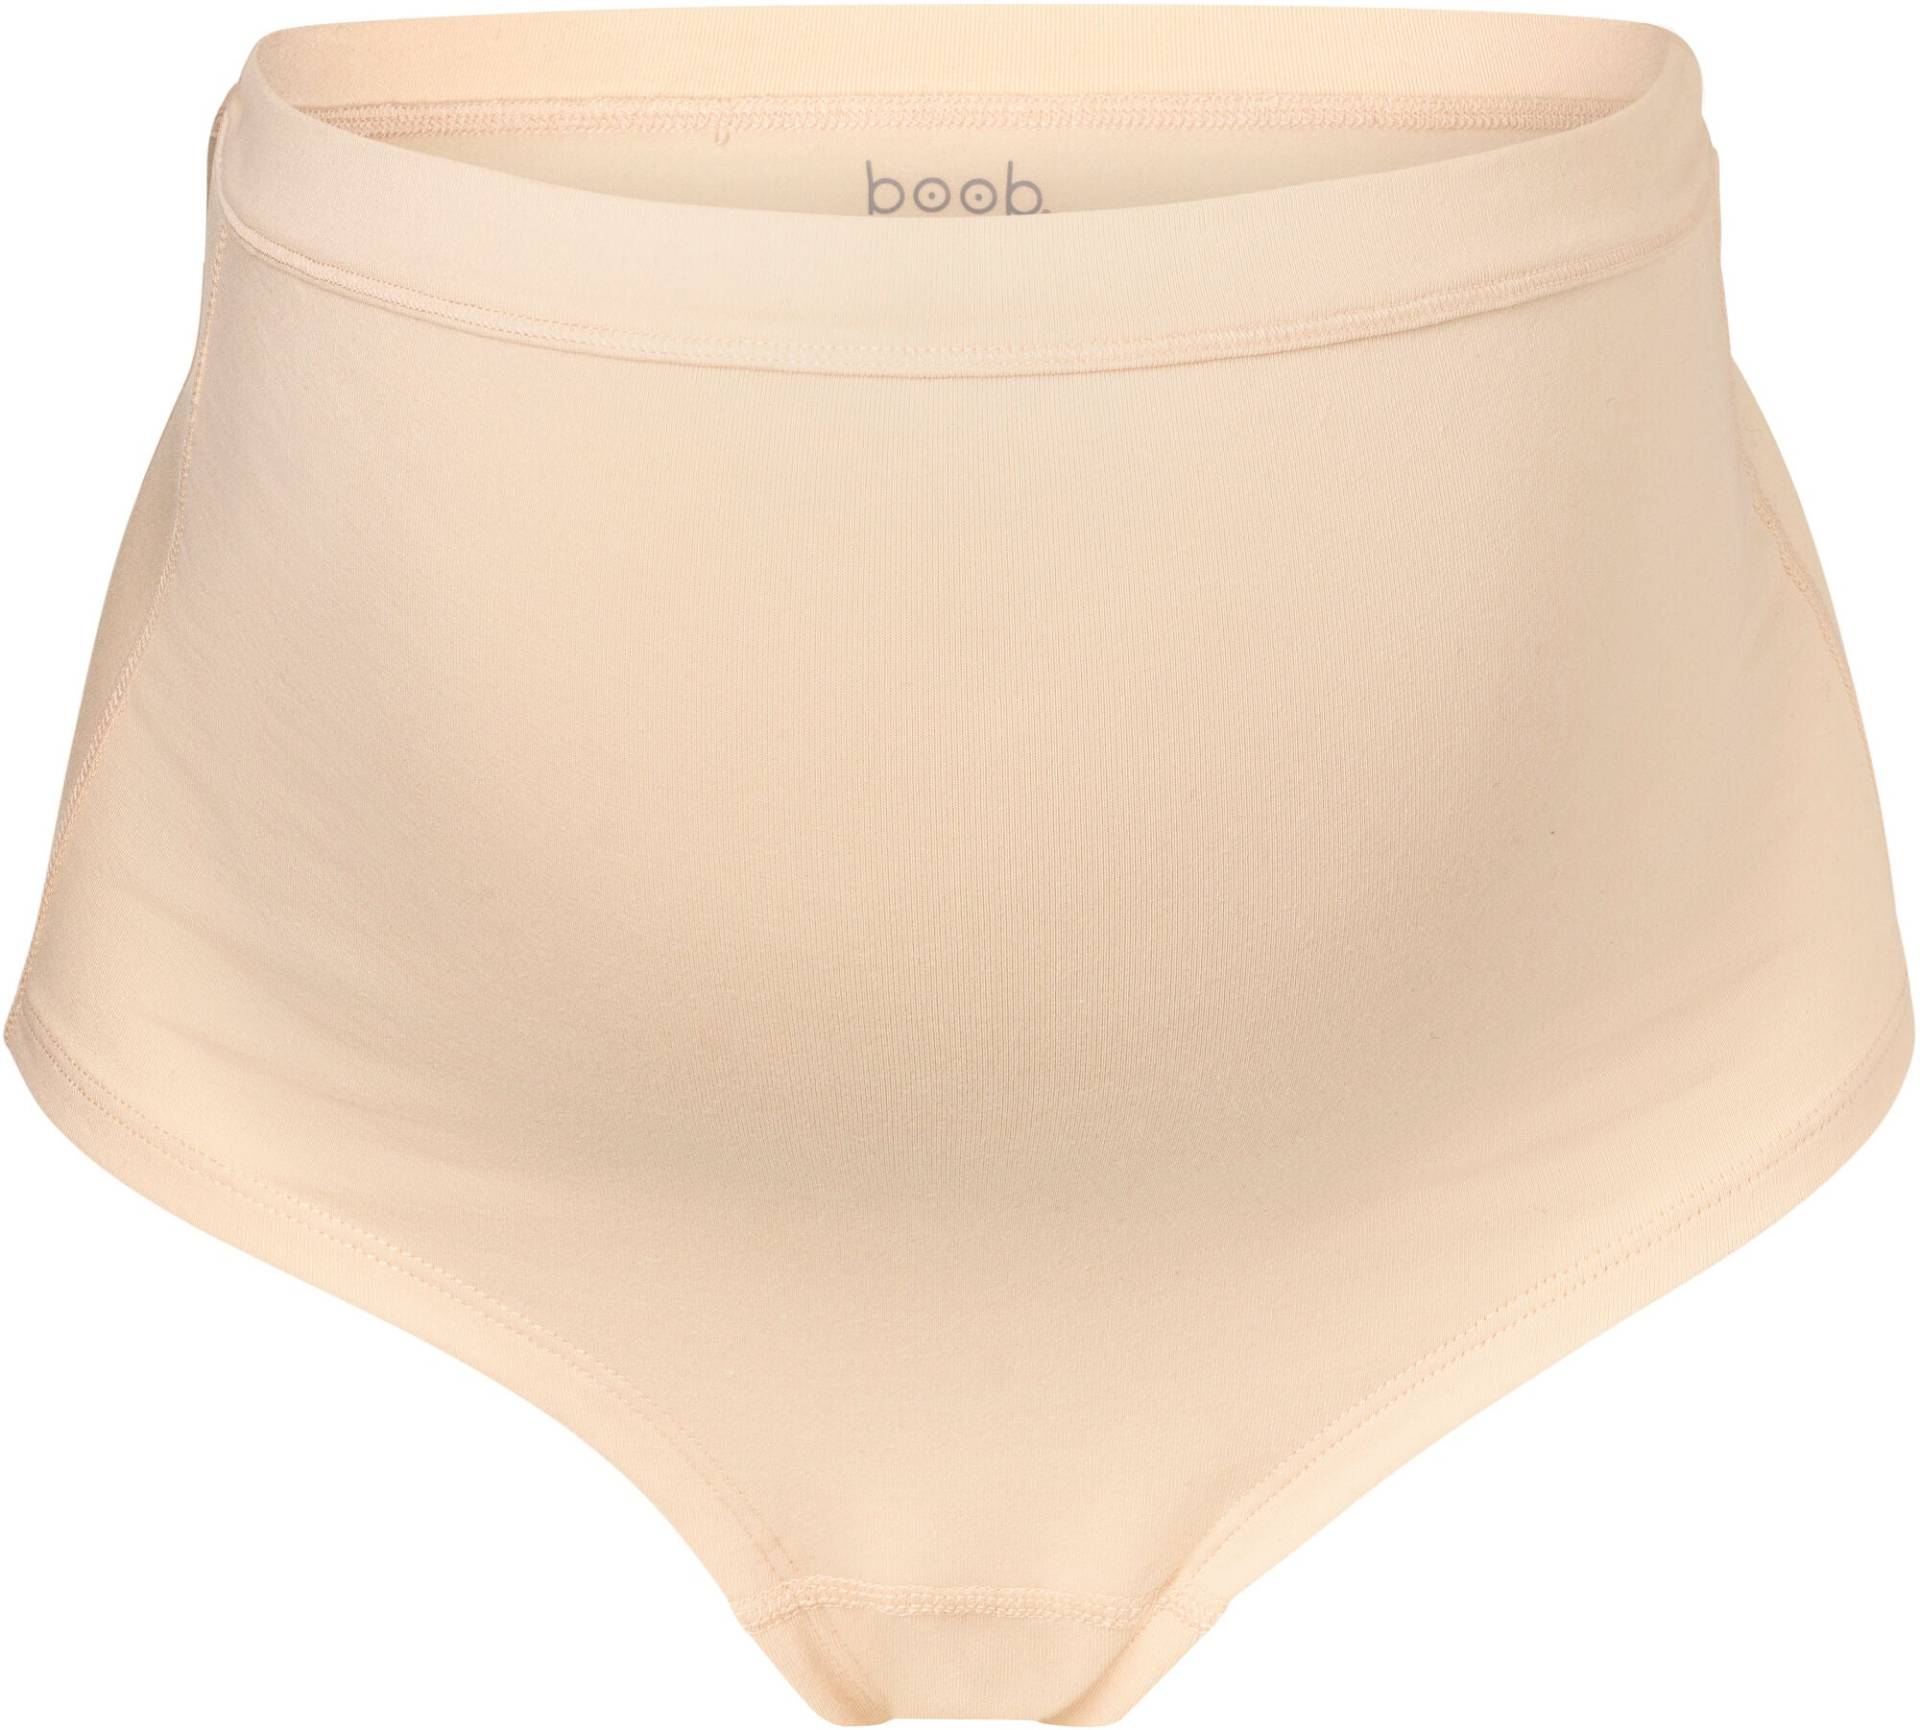 Boob Essentials Umstandunterhose, Beige, M von Boob